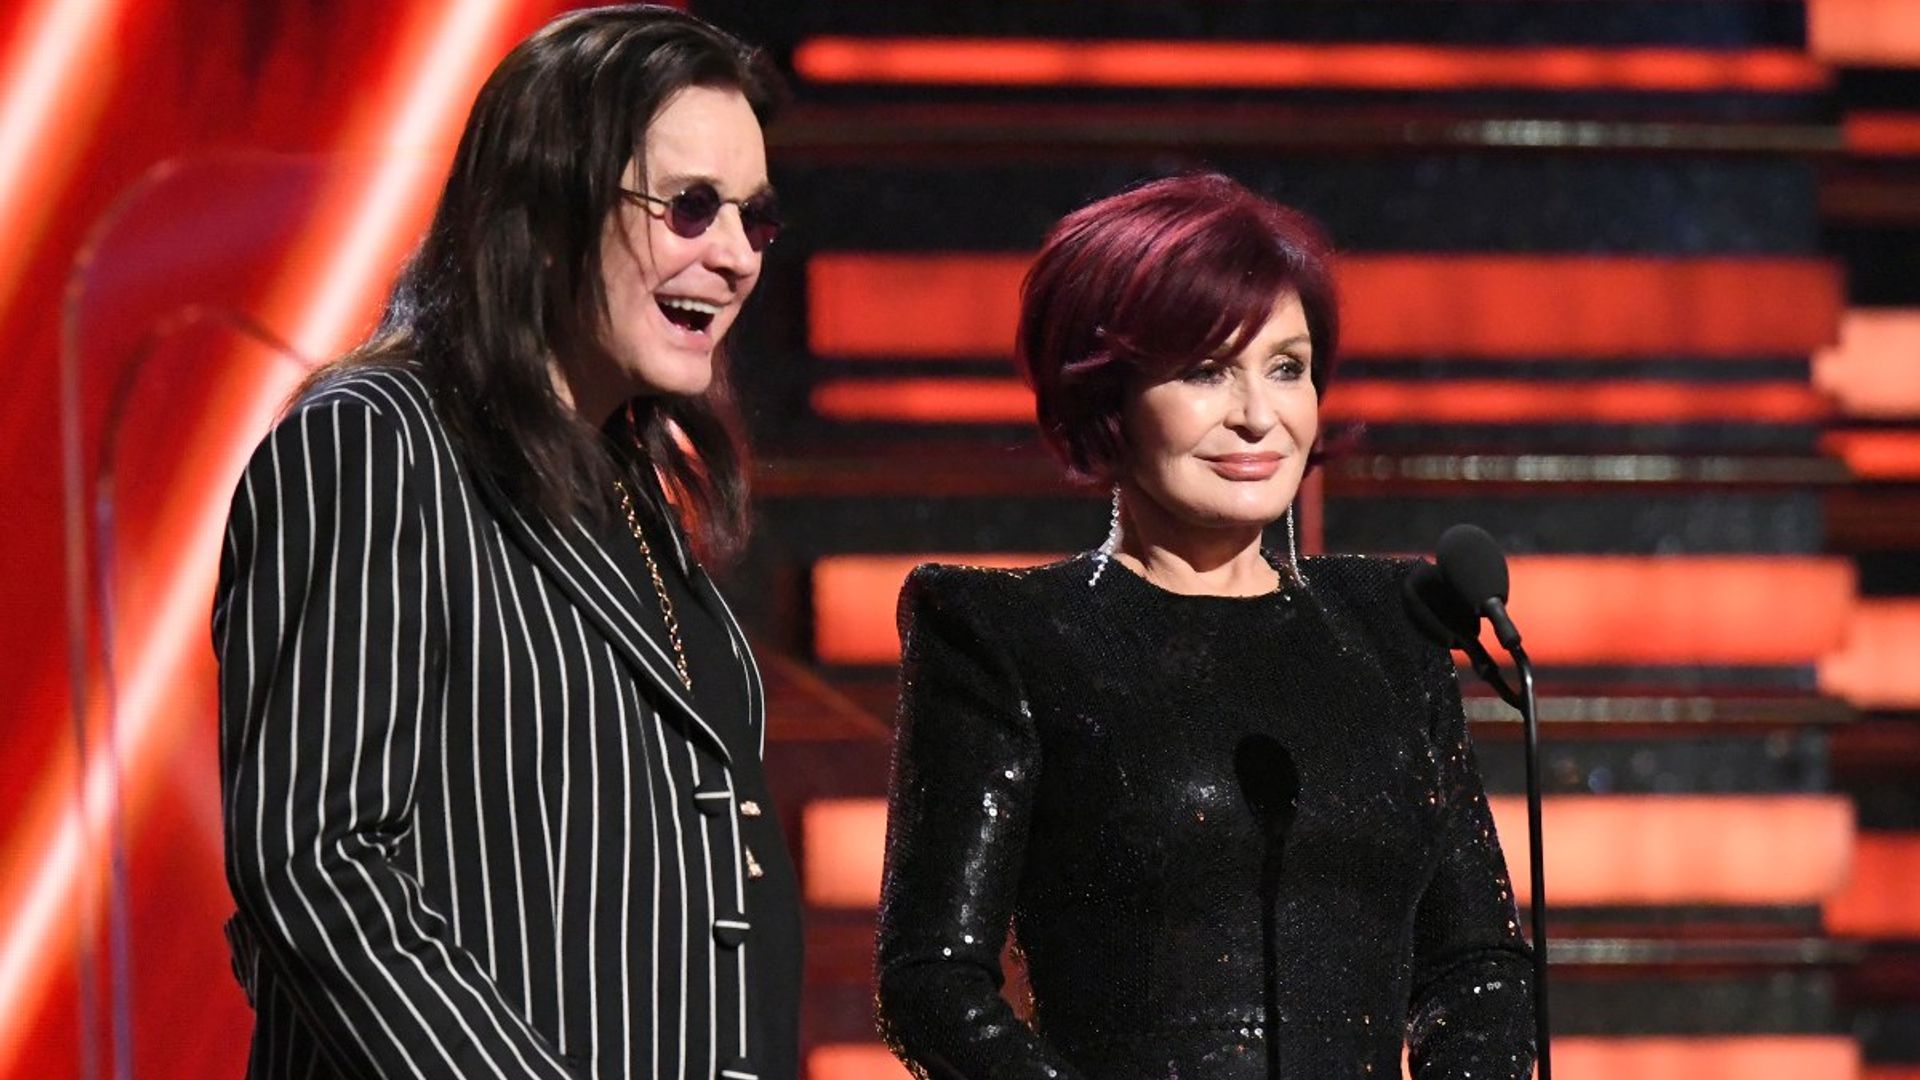 Sharon Osbourne asks for help over in emotional new video alongside husband Ozzy